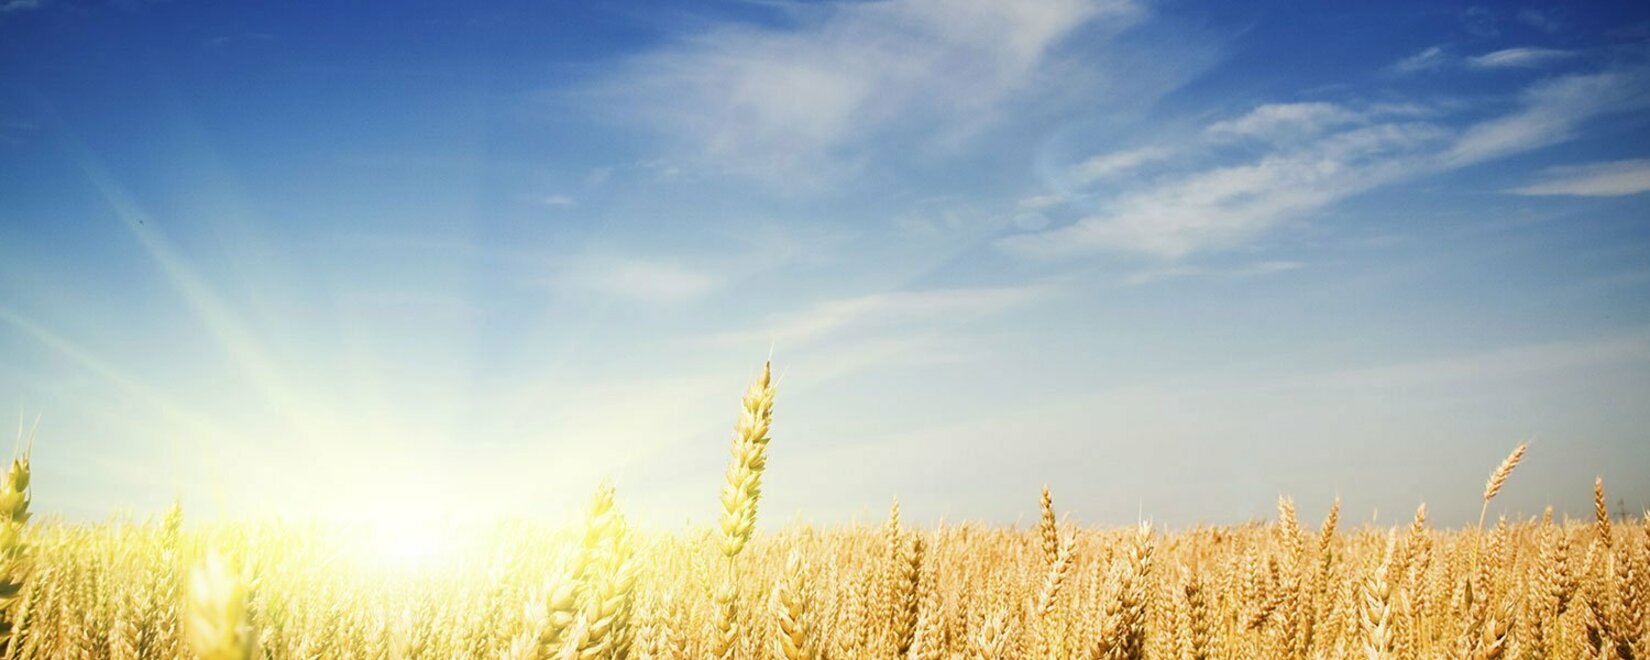 Повышение спроса на пшеницу 2 класса в Украине вызывает конкуренцию между производителями